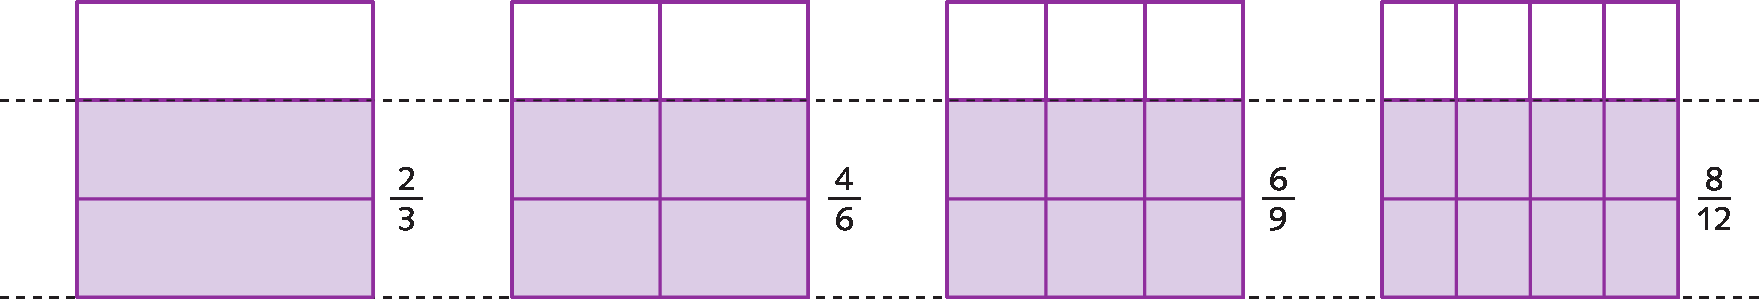 Esquema: Da esquerda para a direita, a primeira figura é um quadrado dividido em 3 partes iguais, sendo uma branca e duas lilás. Do lado direito da parte pintada da figura, a indicação da fração dois terços. A segunda figura é um quadrado dividido em 6 partes iguais, sendo duas brancas e quatro lilás. Do lado direito da parte pintada da figura, a indicação da fração quatro sextos. A terceira figura é um quadrado dividido em 9 partes iguais, sendo 3 brancas e 6 lilás. Do lado direito da parte pintada da figura, a indicação da fração seis nonos. A quarta figura é um quadrado dividido em 12 partes iguais, sendo 4 brancas e 8 lilás. Do lado direito da parte pintada da figura, a indicação da fração oito doze avos. A duas retas paralelas e pontilhadas sobre as linhas de divisão entre as partes lilás e brancas das figuras.